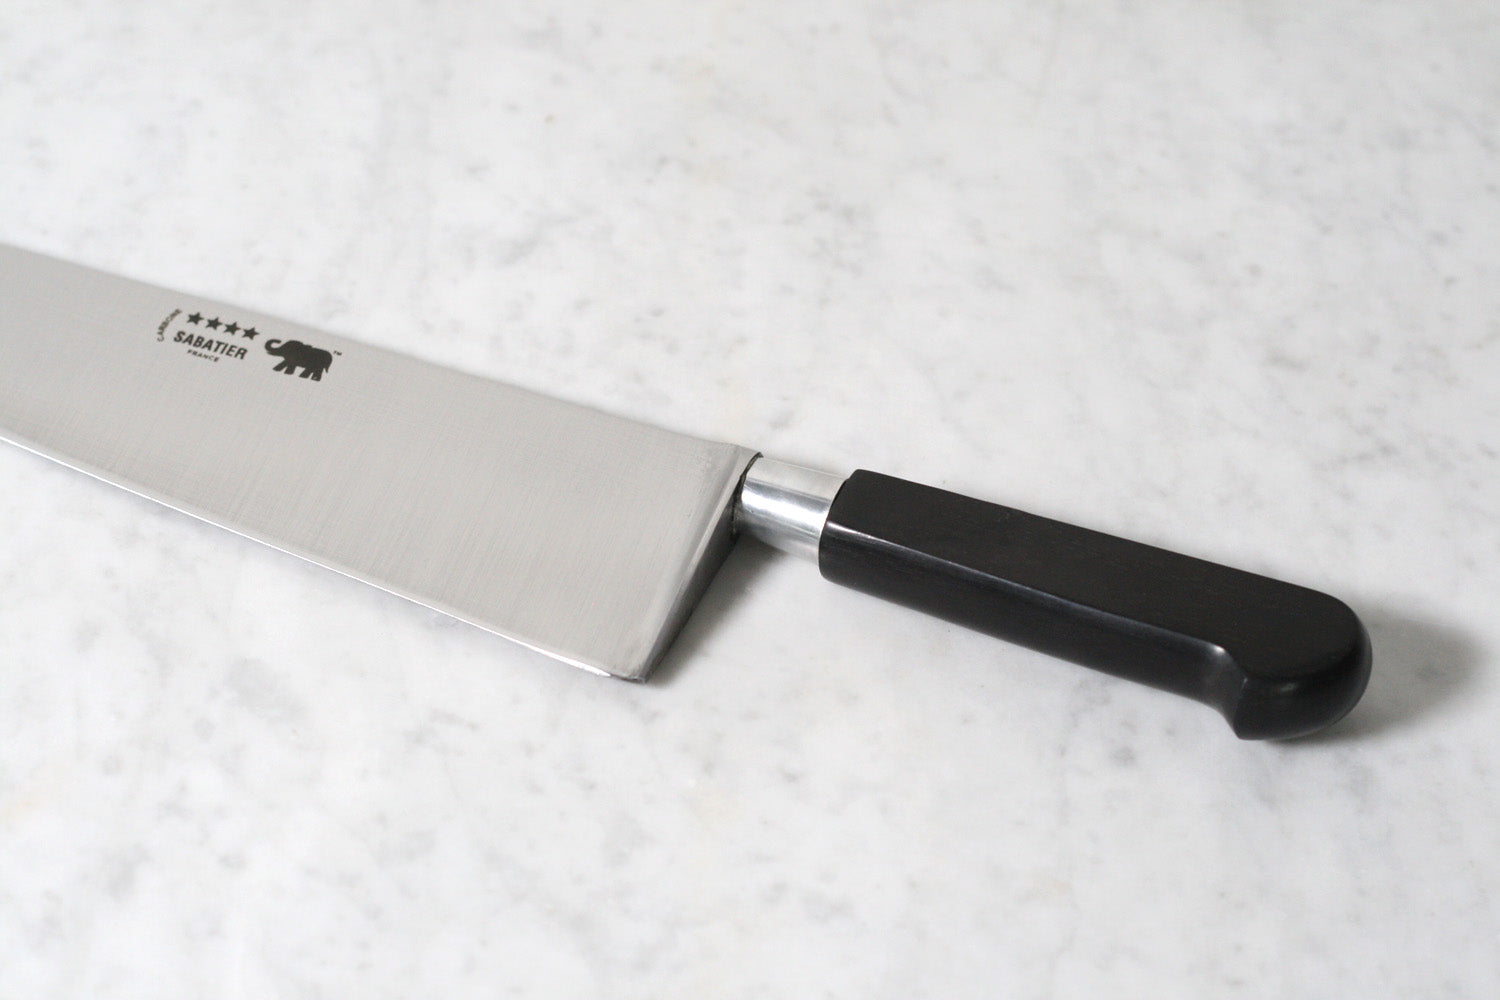 Sabatier Nogent 10" Chef's Knife Carbone Steel